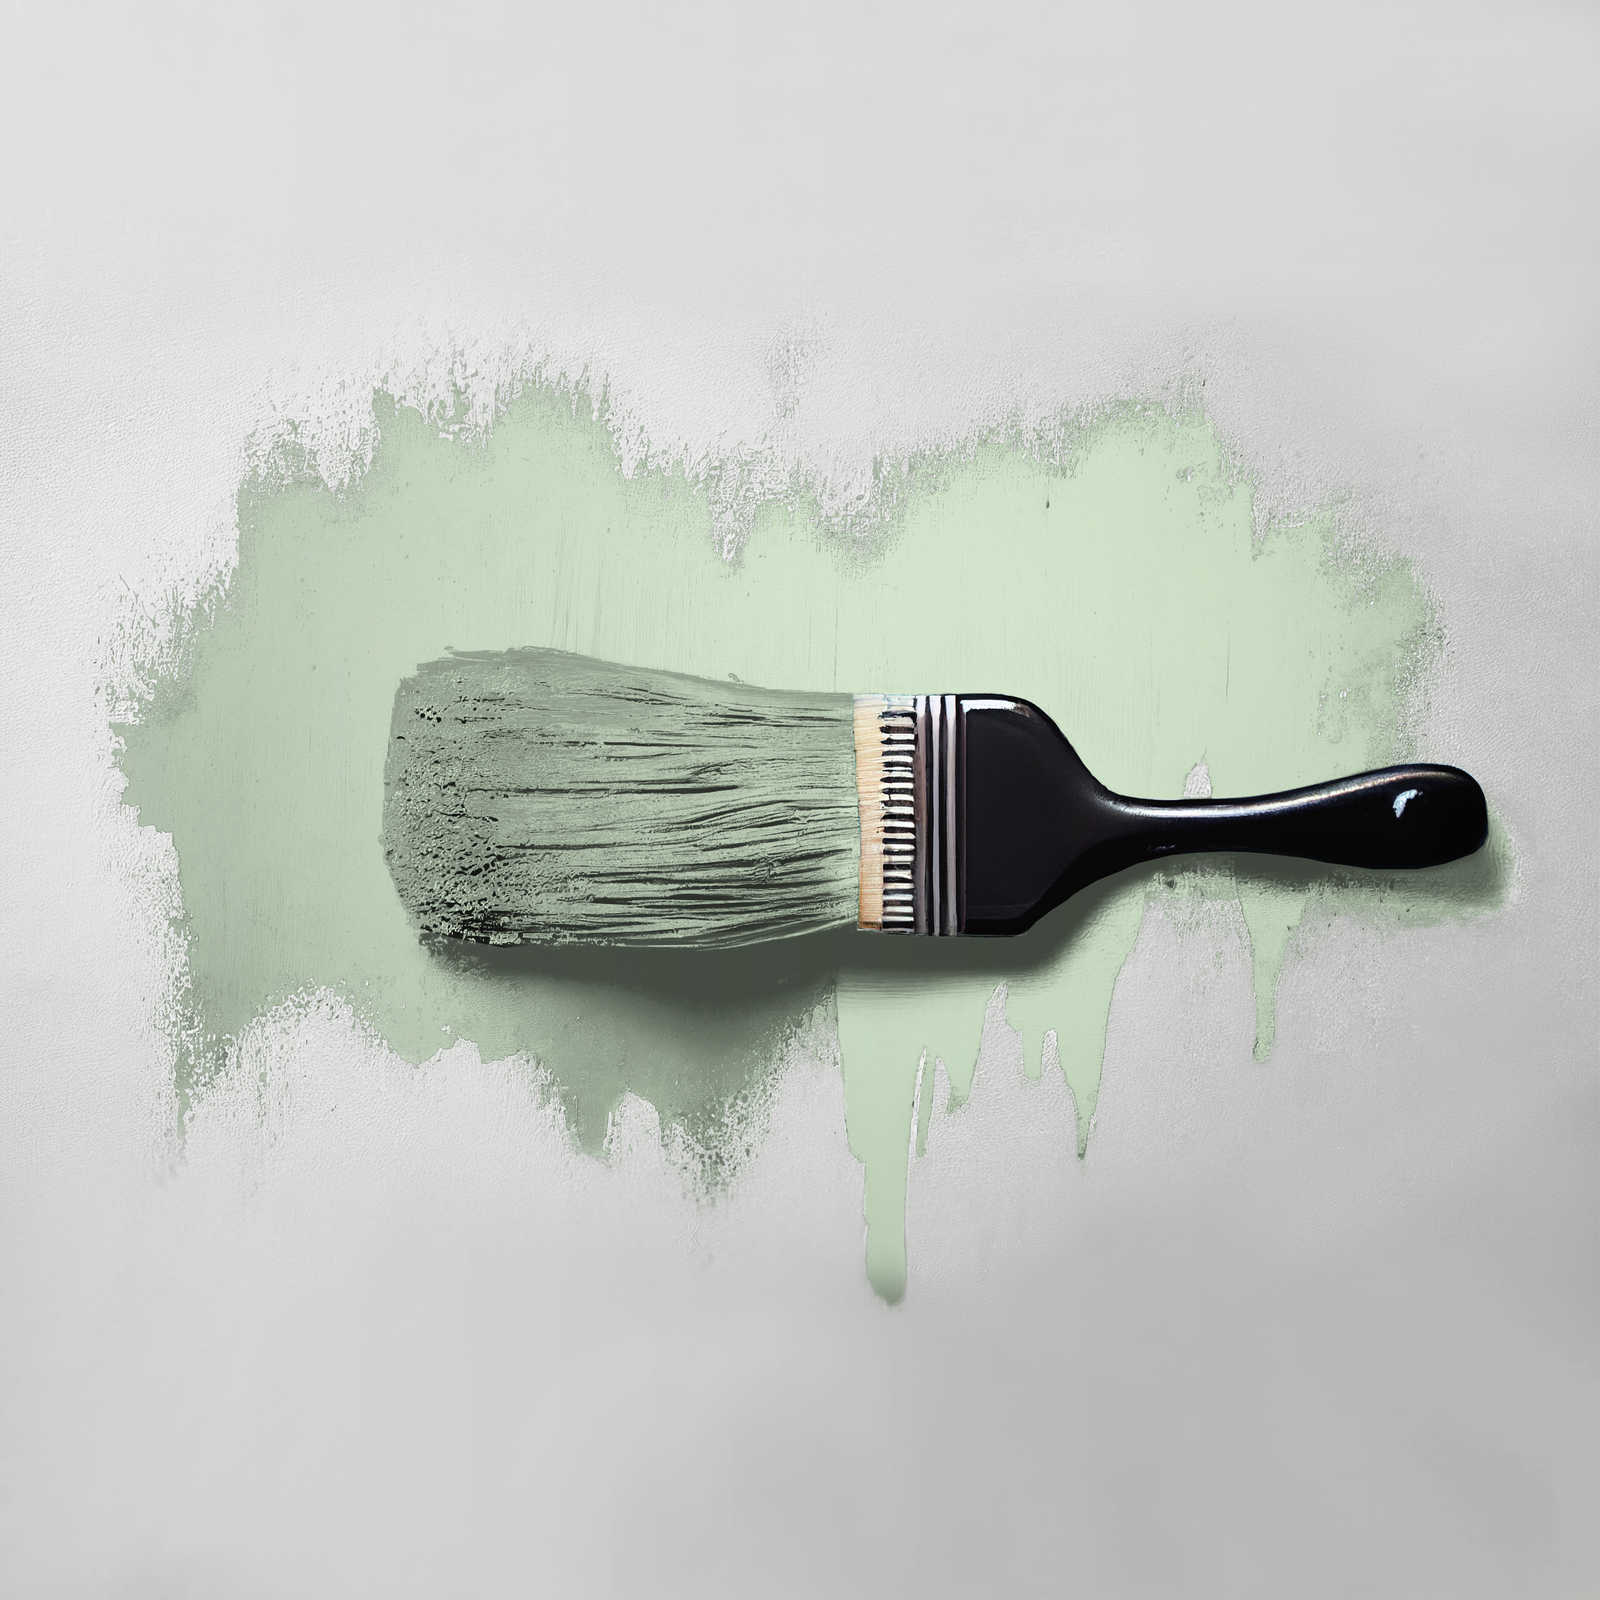             Peinture murale TCK4007 »Woodruff Cream« en vert pastel clair – 2,5 litres
        